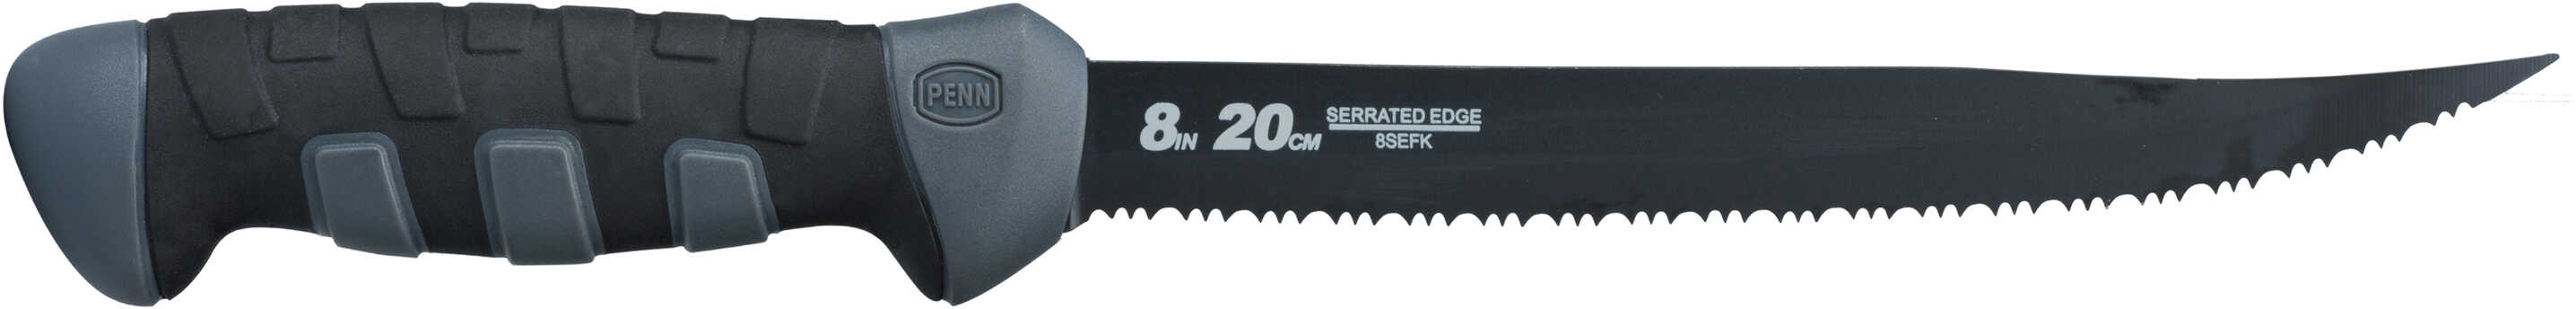 PENN 8" Serrated Edge Fillet Knife